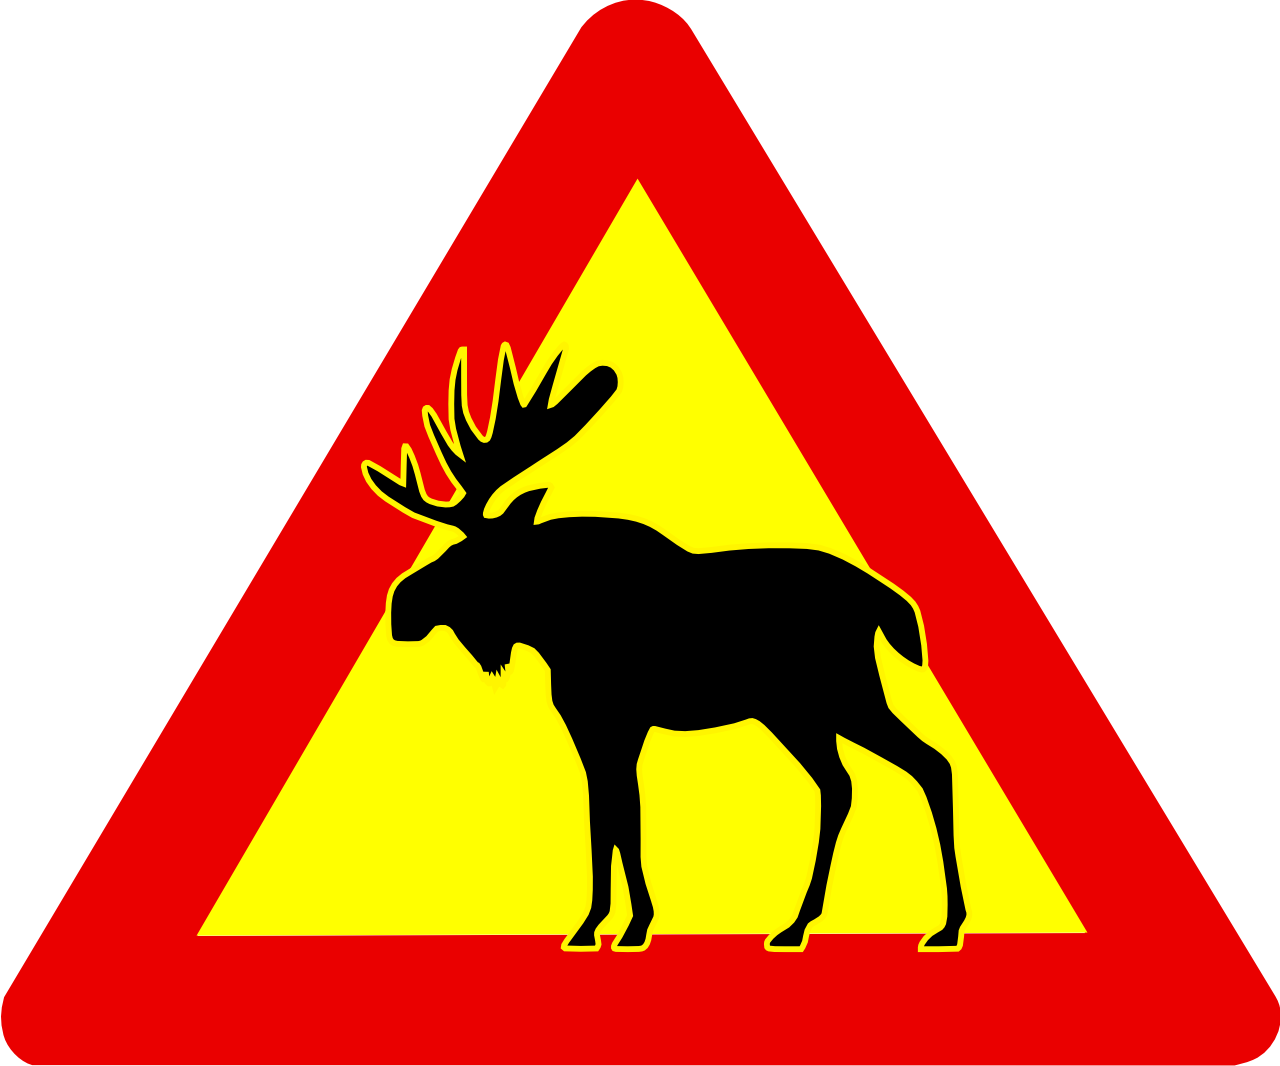 Swedish Moose clipart #6, Download drawings